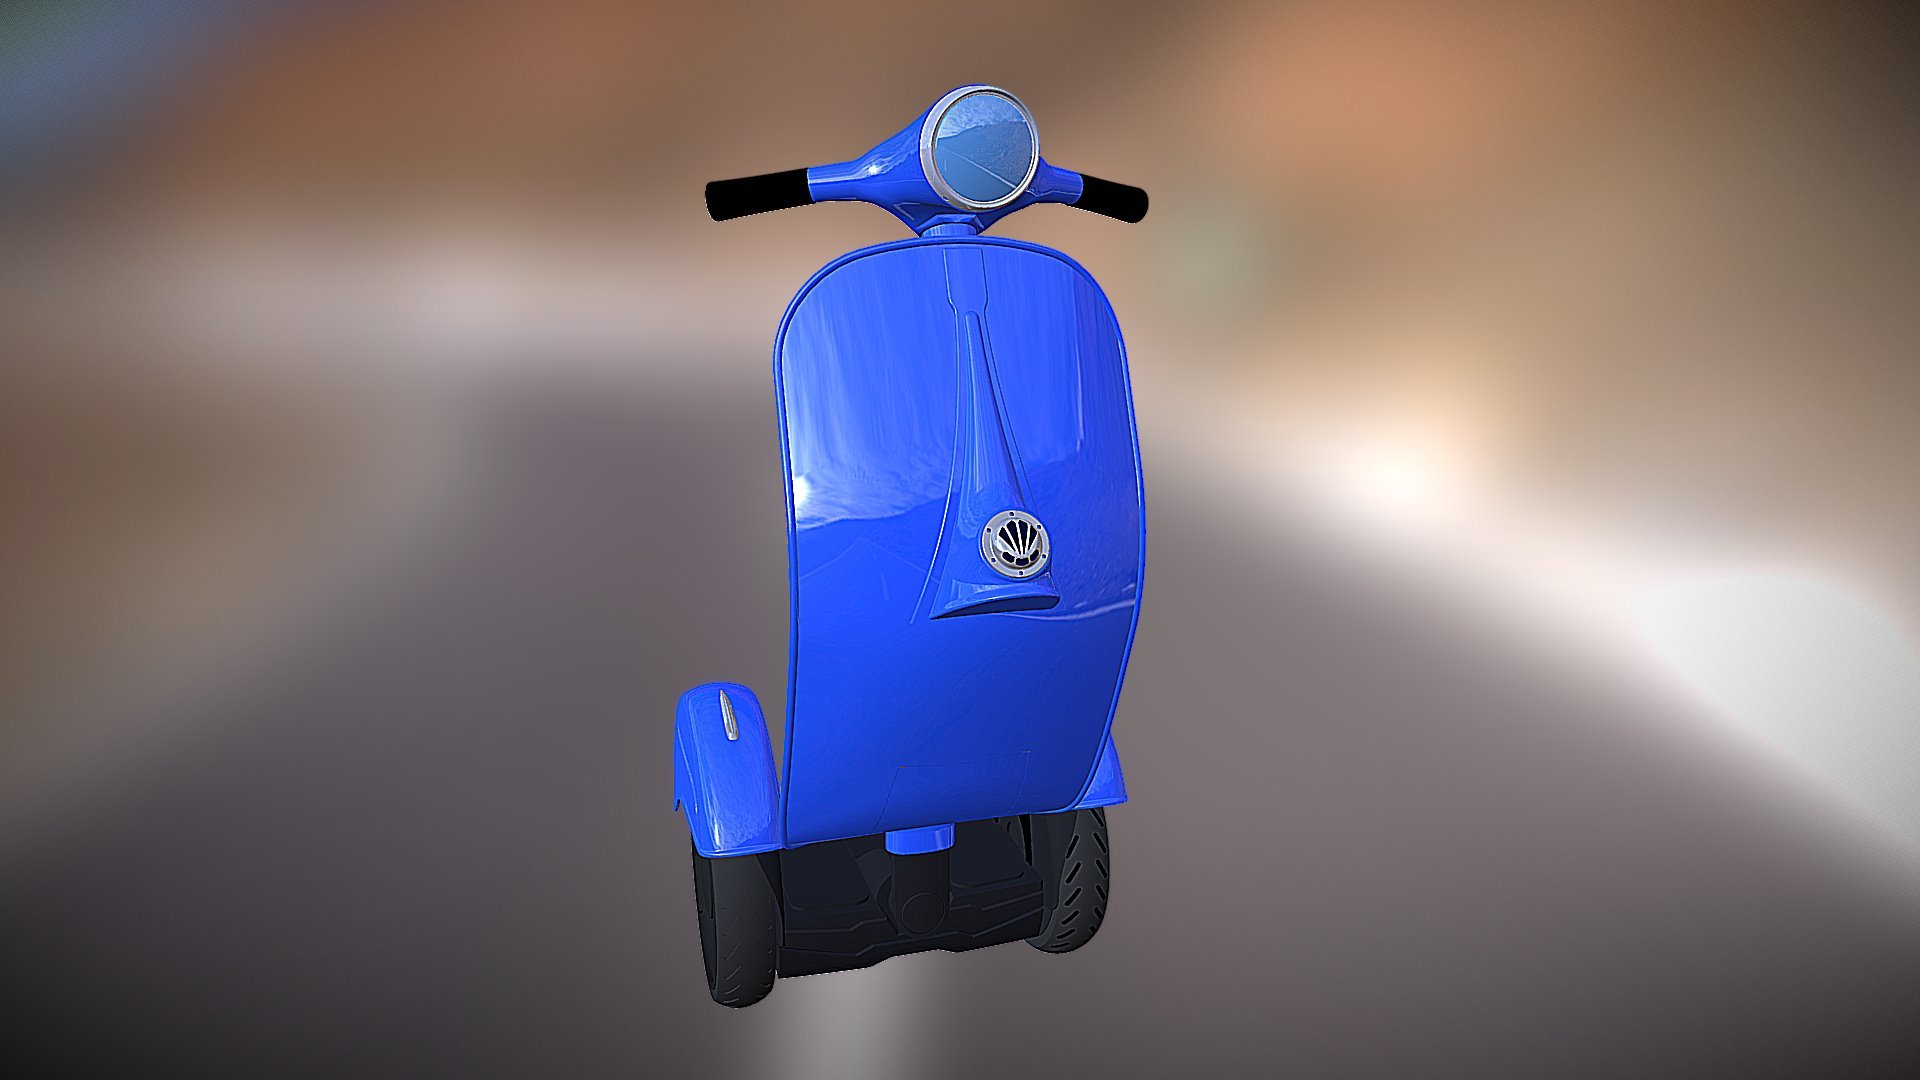 Z-SCOOTER - Z-Scooter by bel&bel - 3D model by BEL&BEL (@estudicreatiu) 3d model